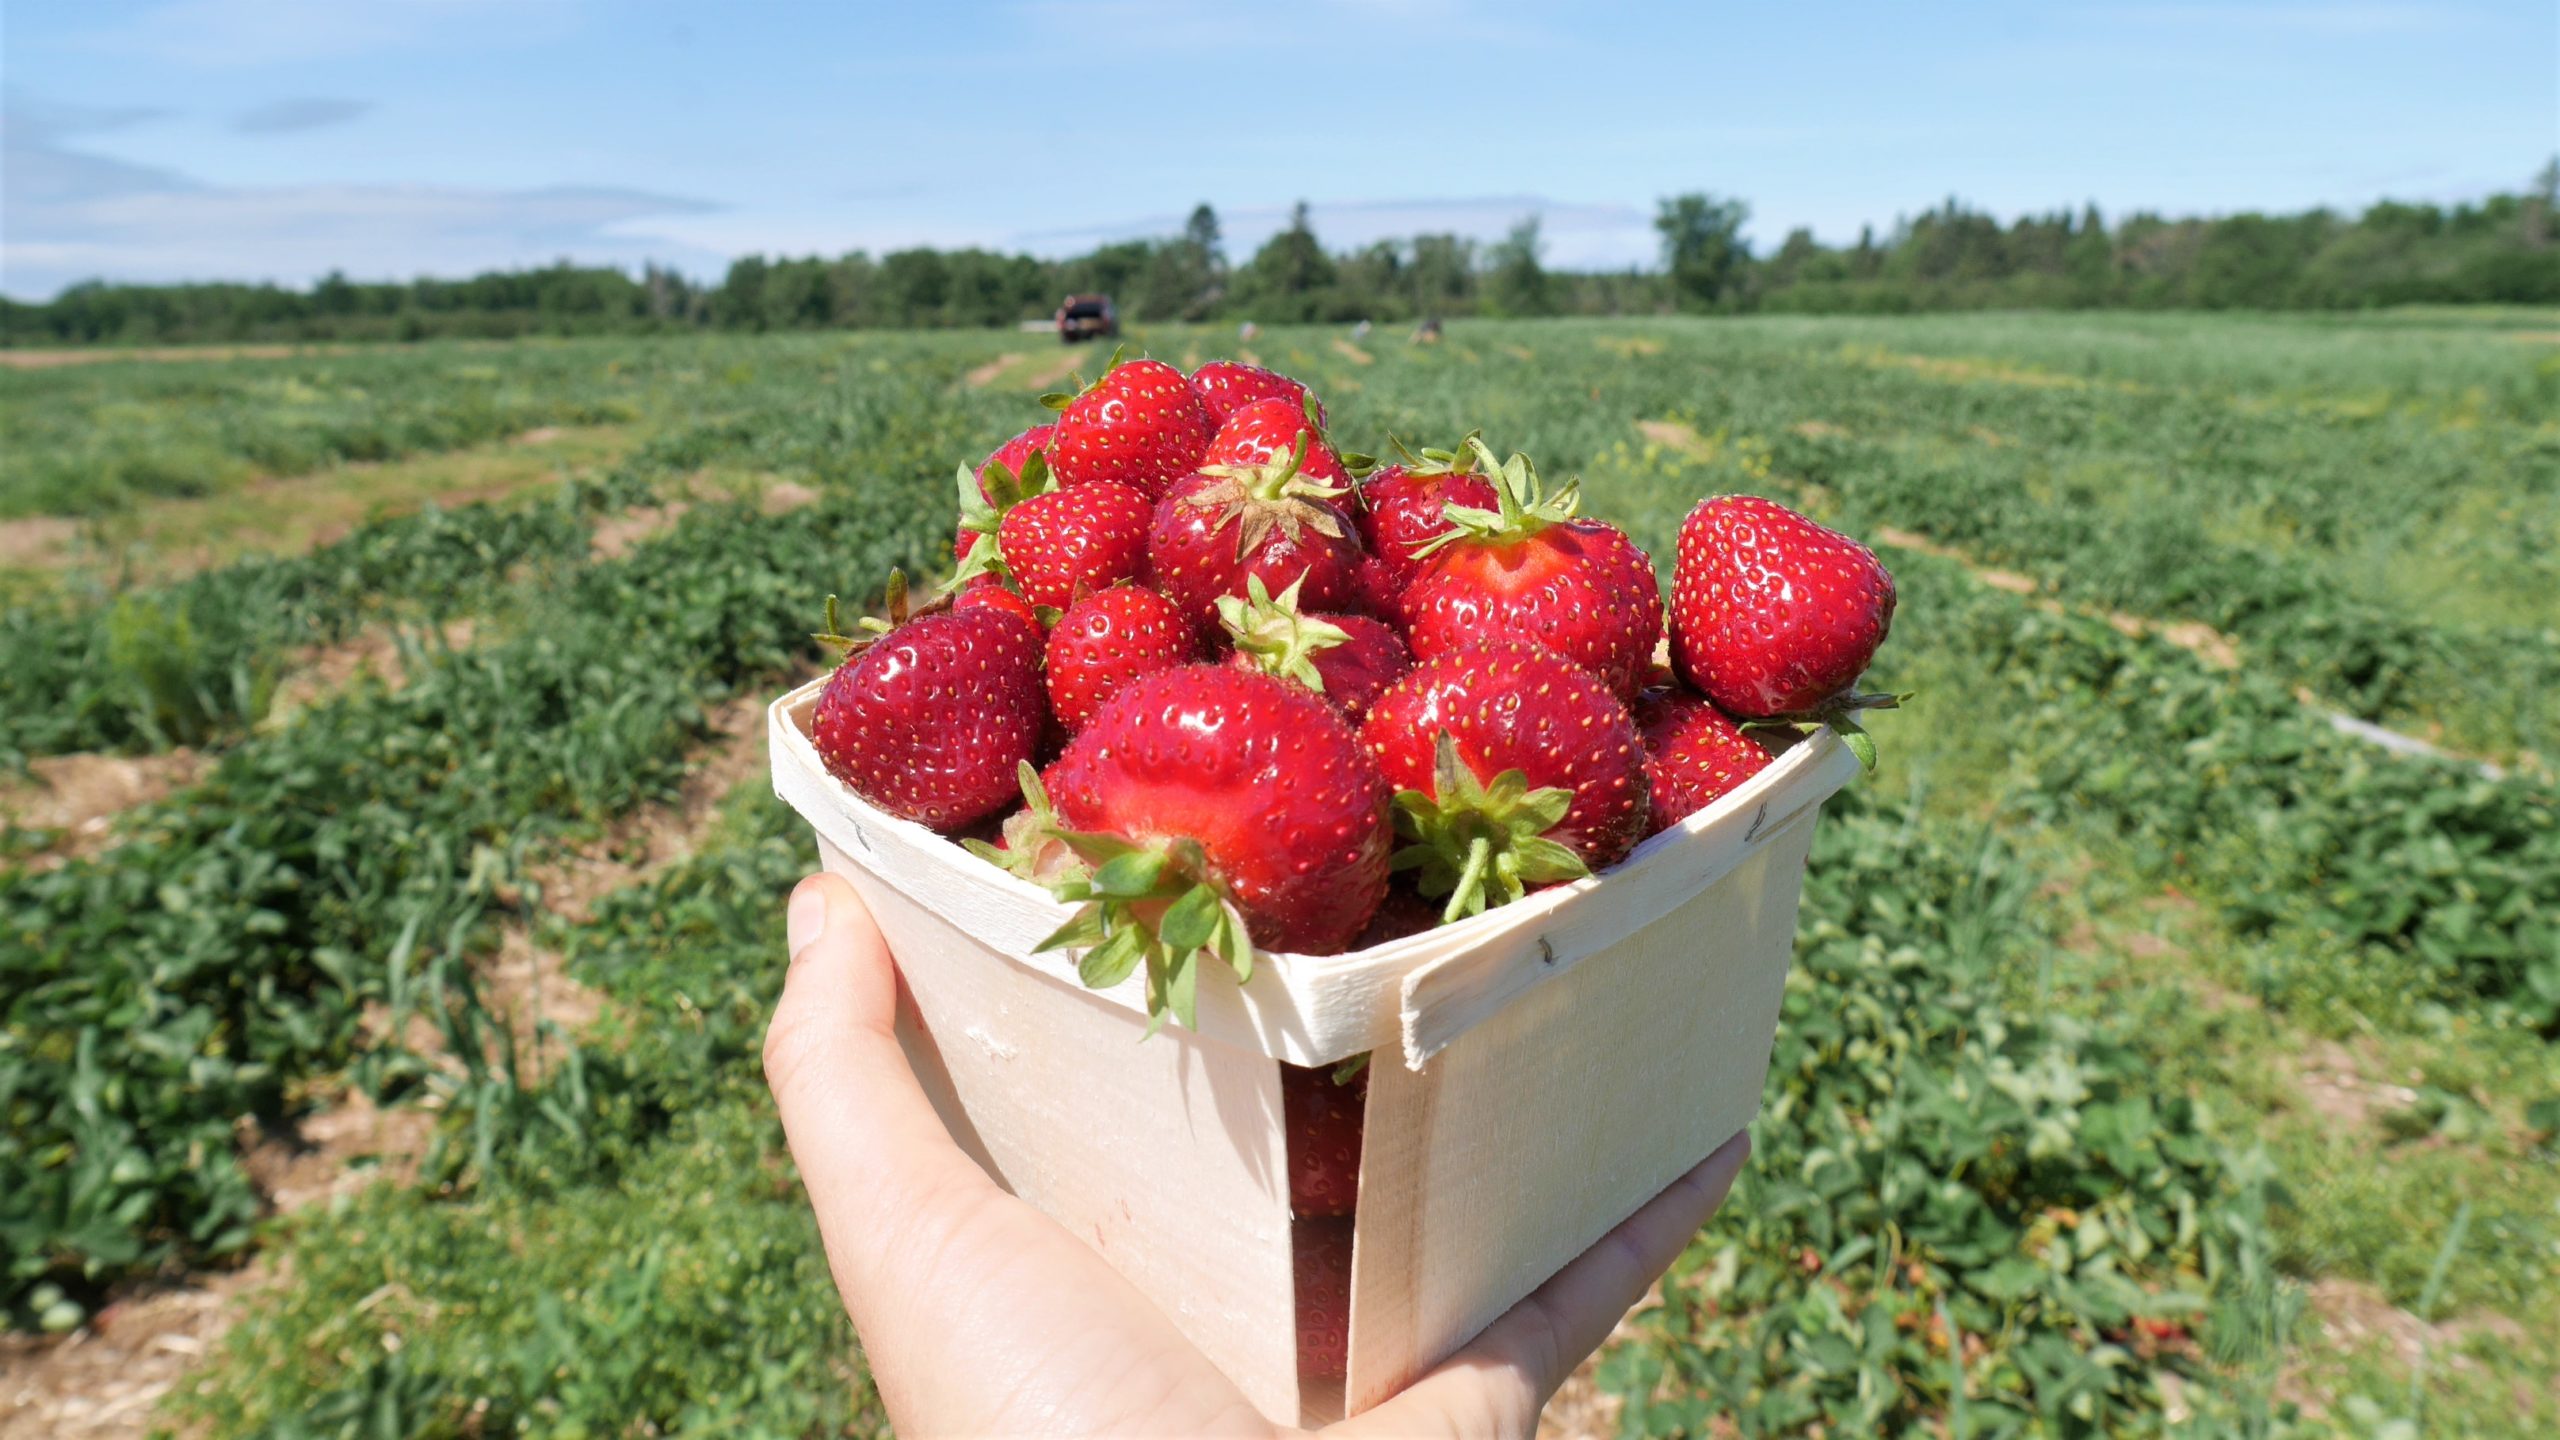 Sussex NB Strawberry Upick autocueillette fraises Nouveau-Brunswick blog voyage Canada